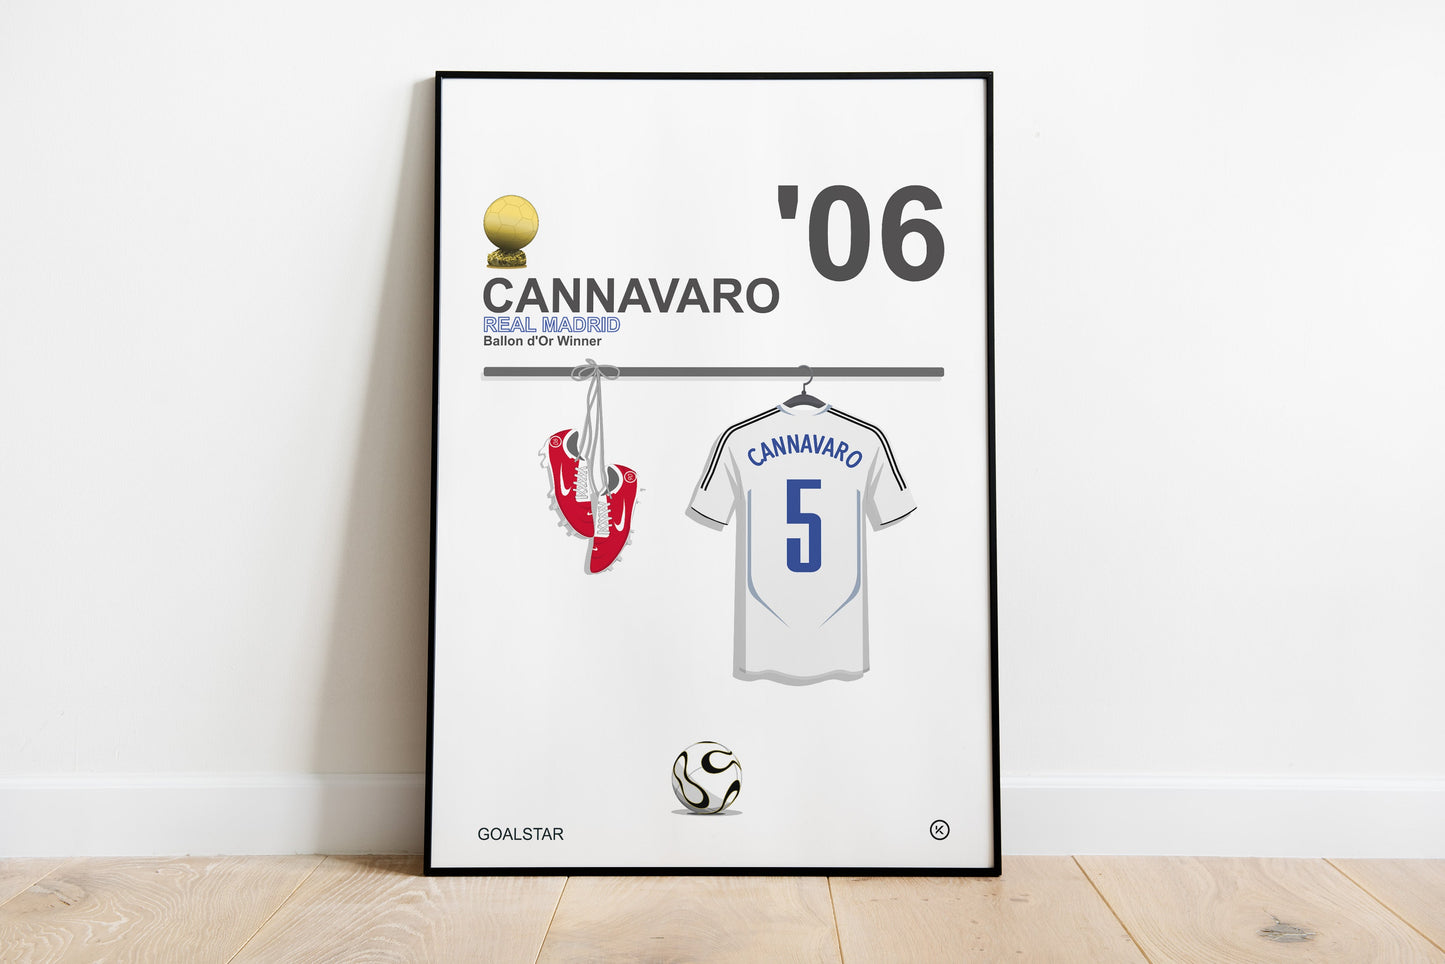 Fabio Cannavaro - Ballon d'Or Winner 2006